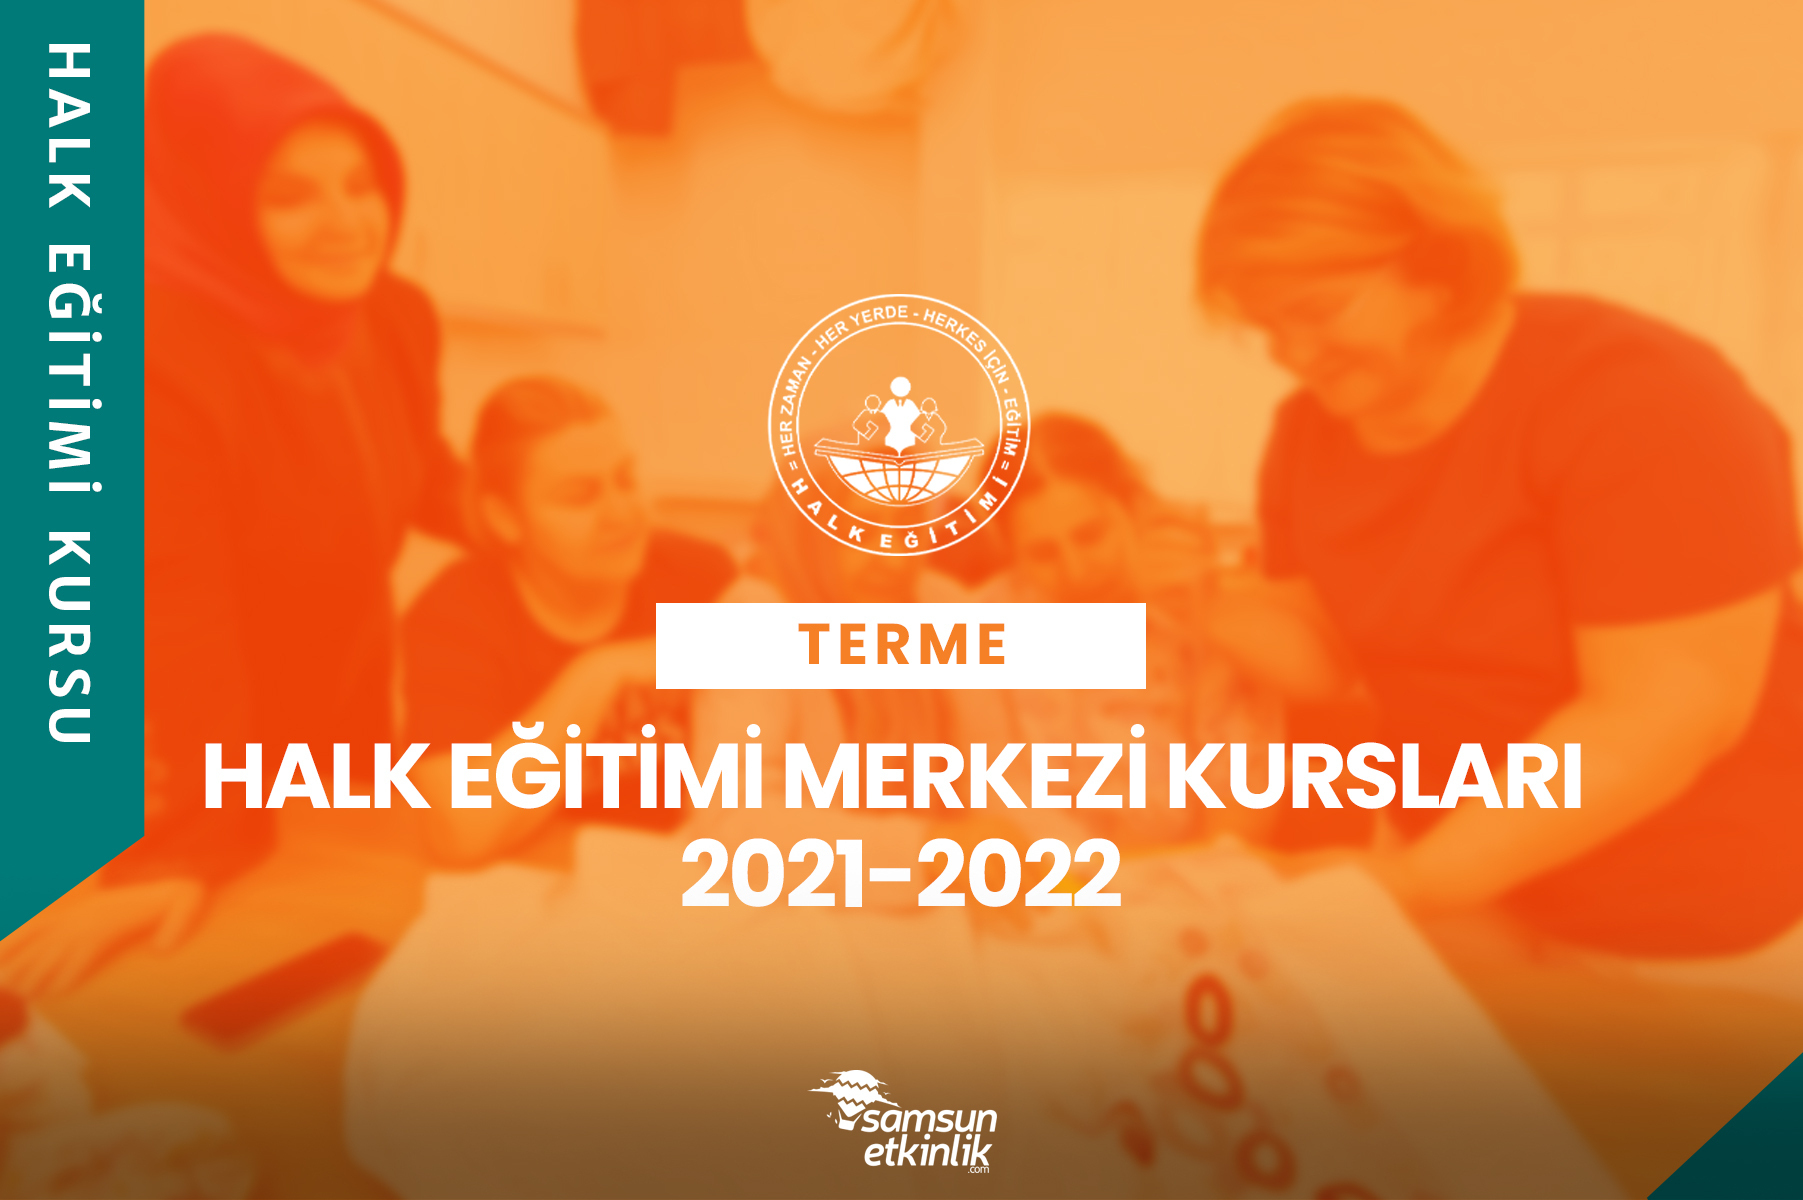 Samsun Terme Halk Eğitimi Merkezi Kursları 2021-2022